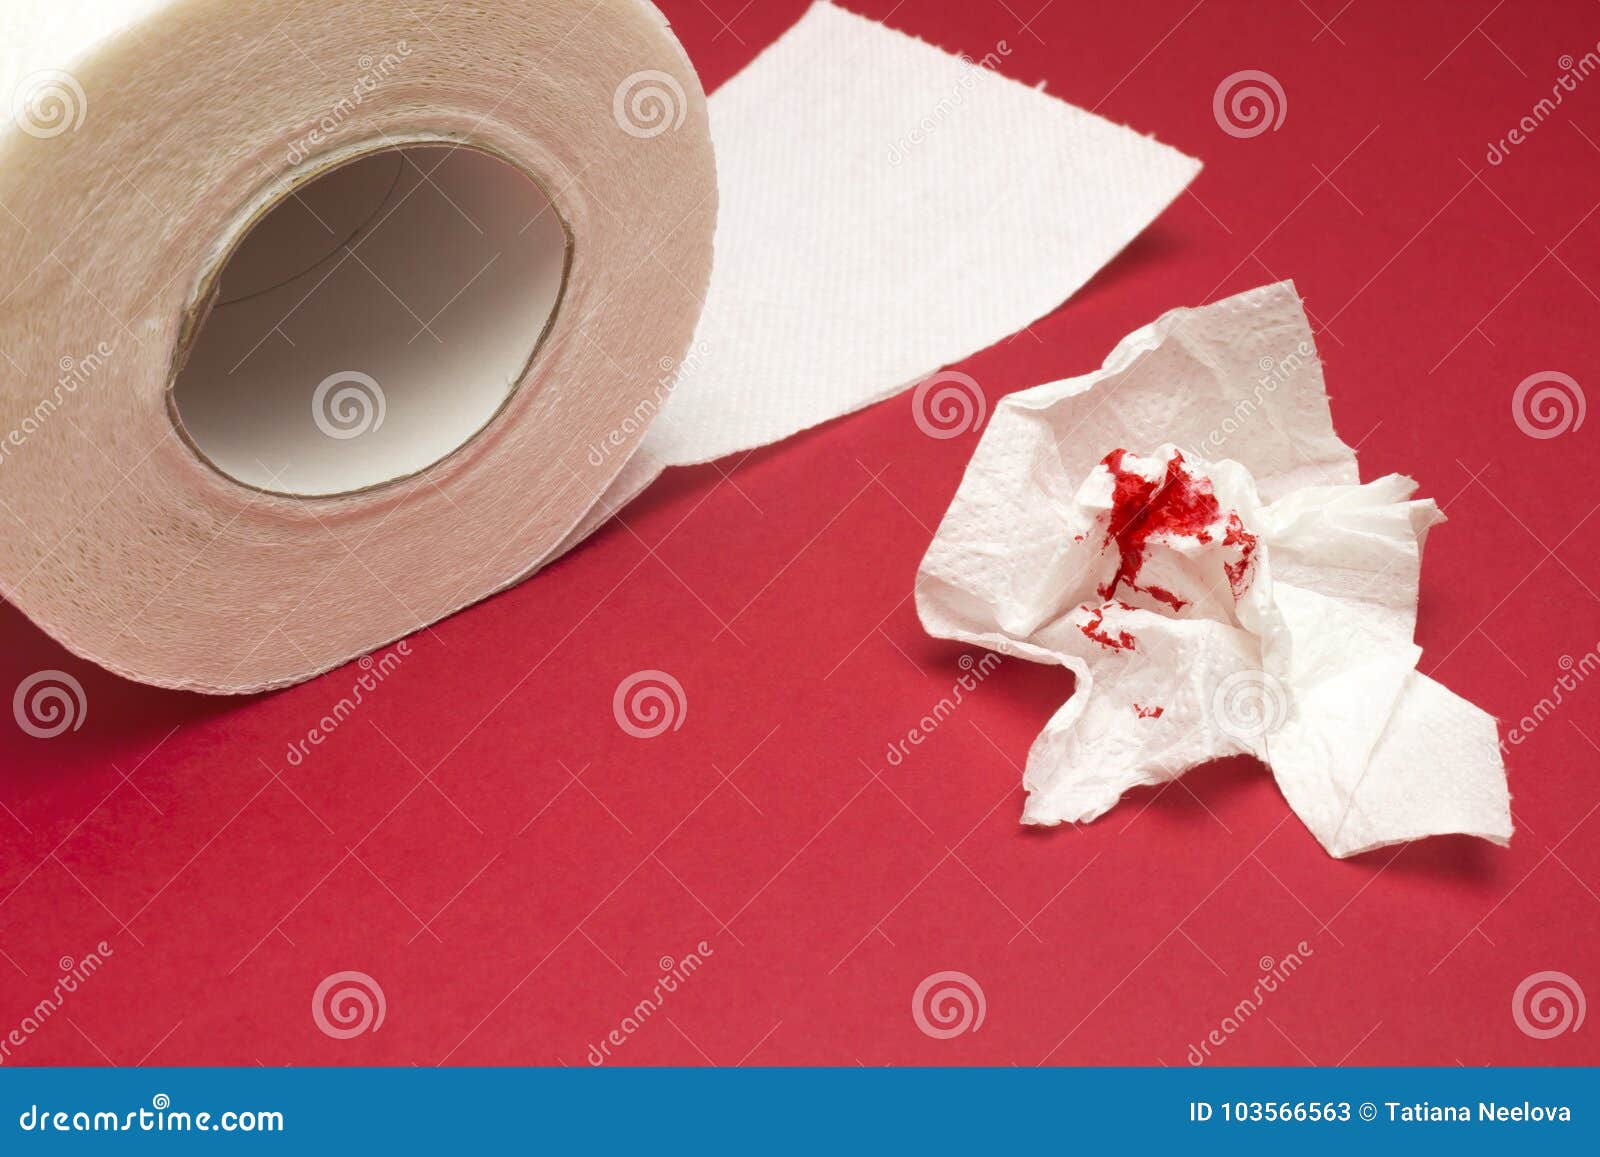 Кровь на туалетной бумаге мужчина. Кровь на туалетной бумаге. Кровяная туалетная бумага. Капля крови на туалетной бумаге. Геморрой на туалетной бумаге.